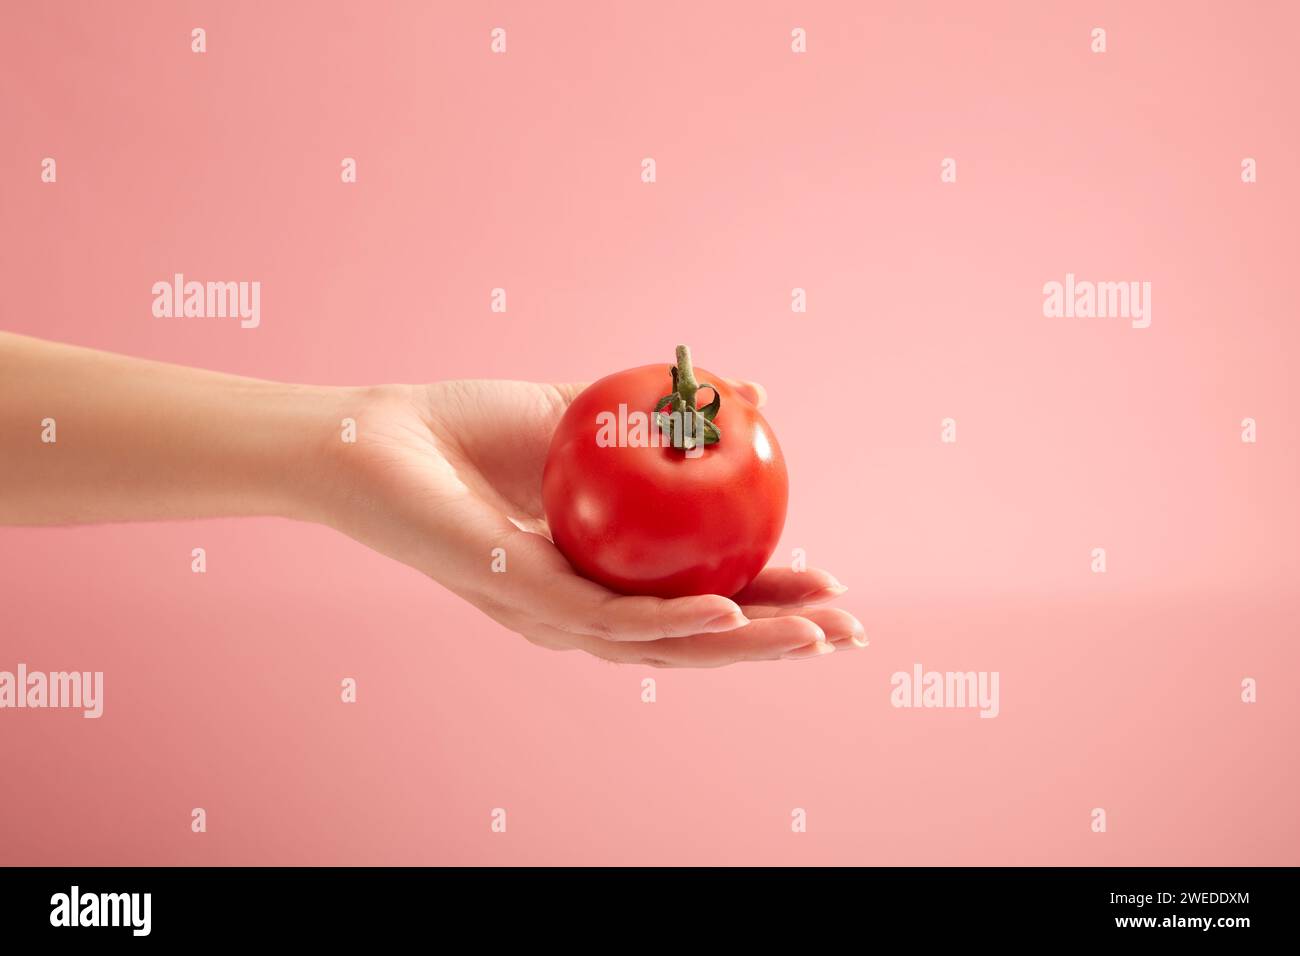 Il modello a mano regge un pomodoro fresco su sfondo rosa pastello. Il pomodoro (Solanum lycopersicum) aiuta a migliorare la salute e l'aspetto dello sci Foto Stock